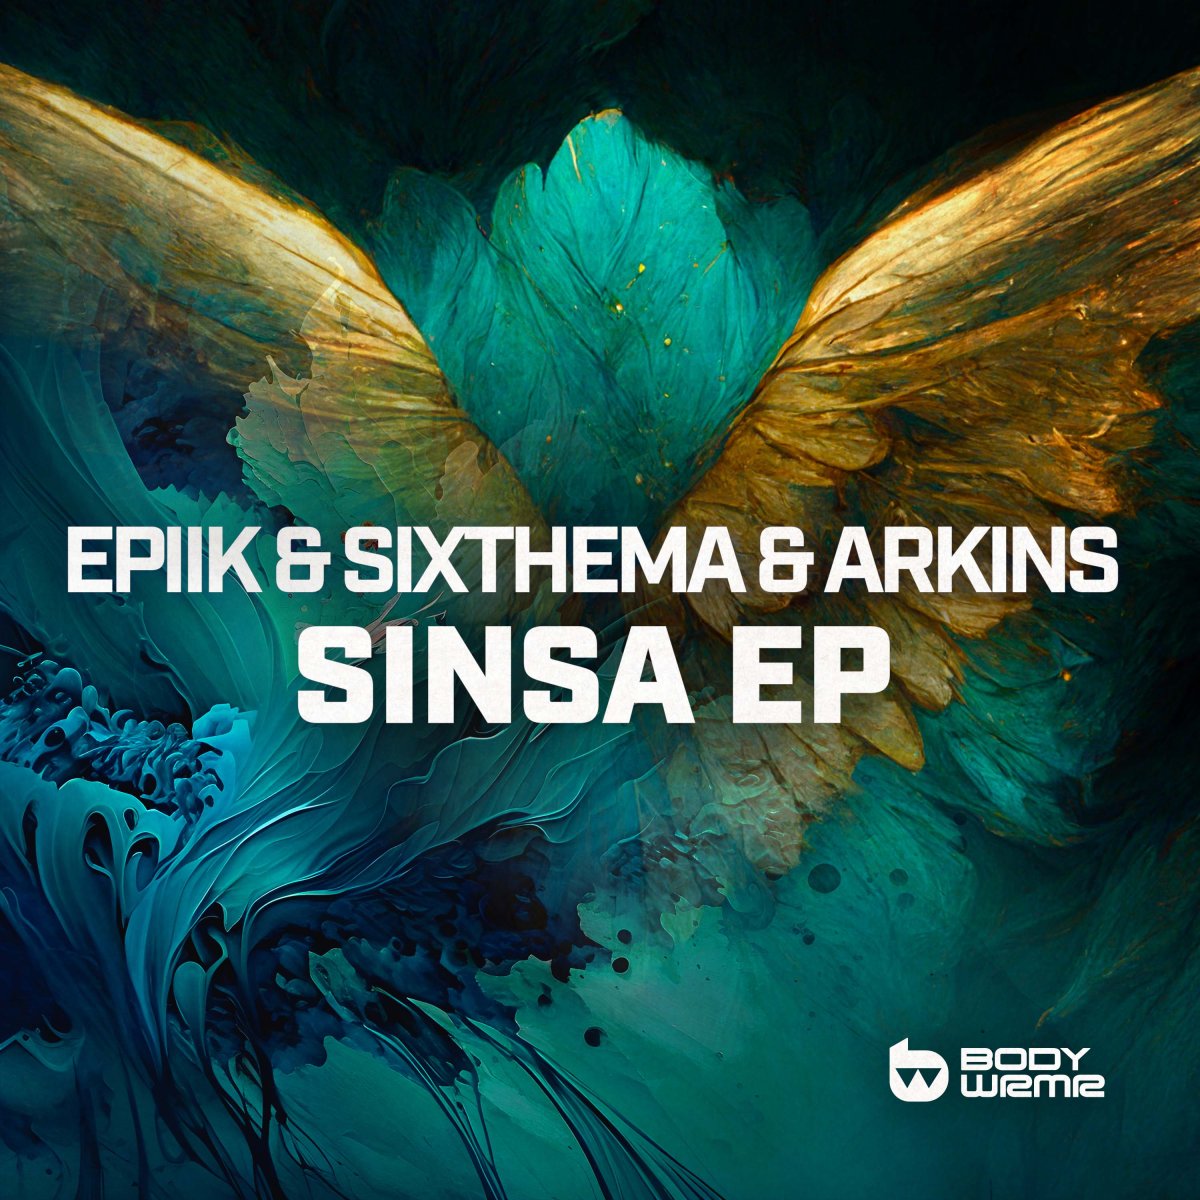 Sinsa EP - Epiik⁠ & Sixthema⁠ & Arkins⁠ 